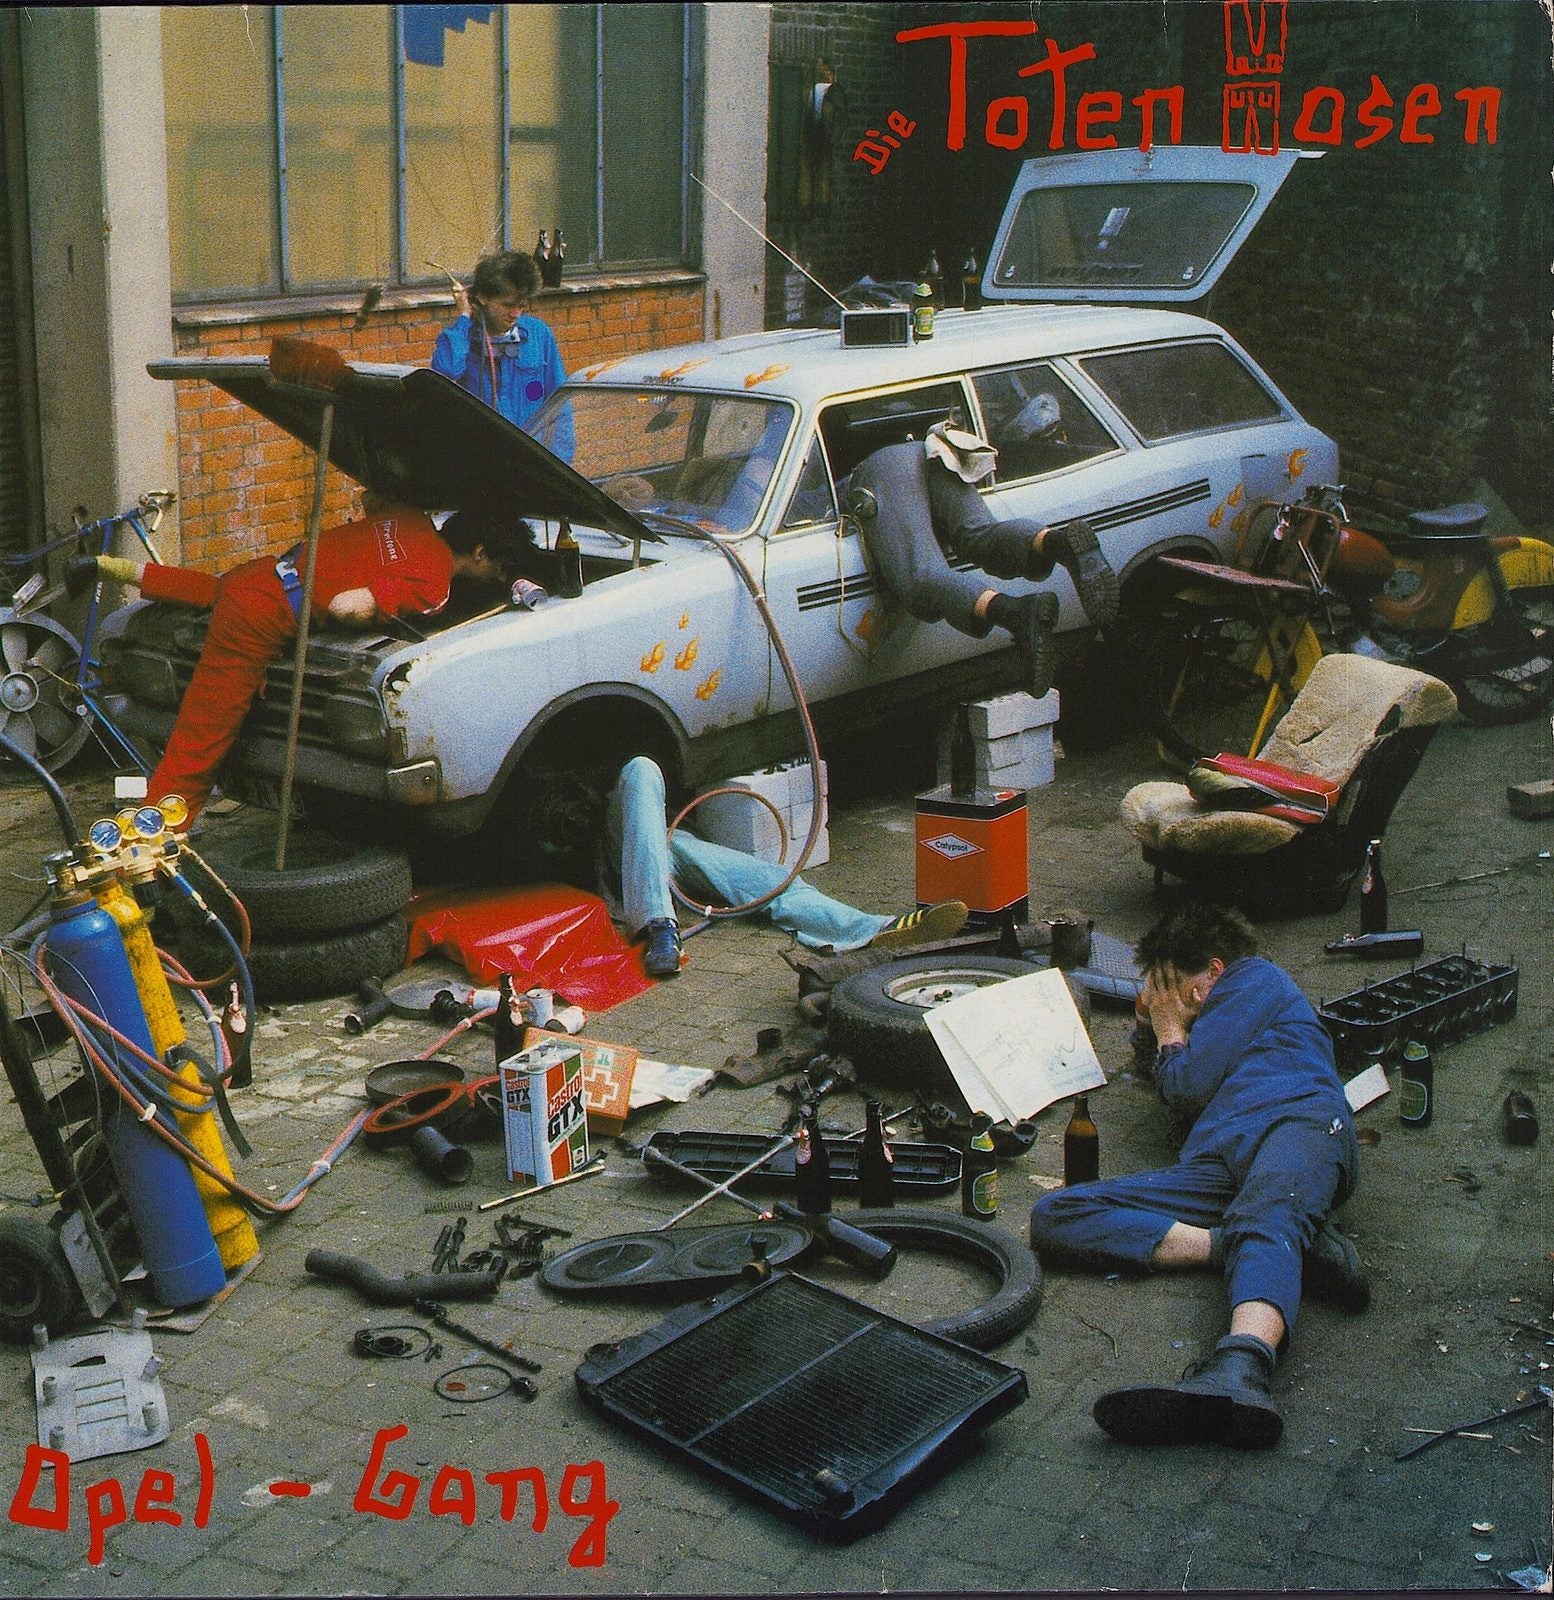 Die Toten Hosen ‎- Opel-Gang (Vinyl LP)